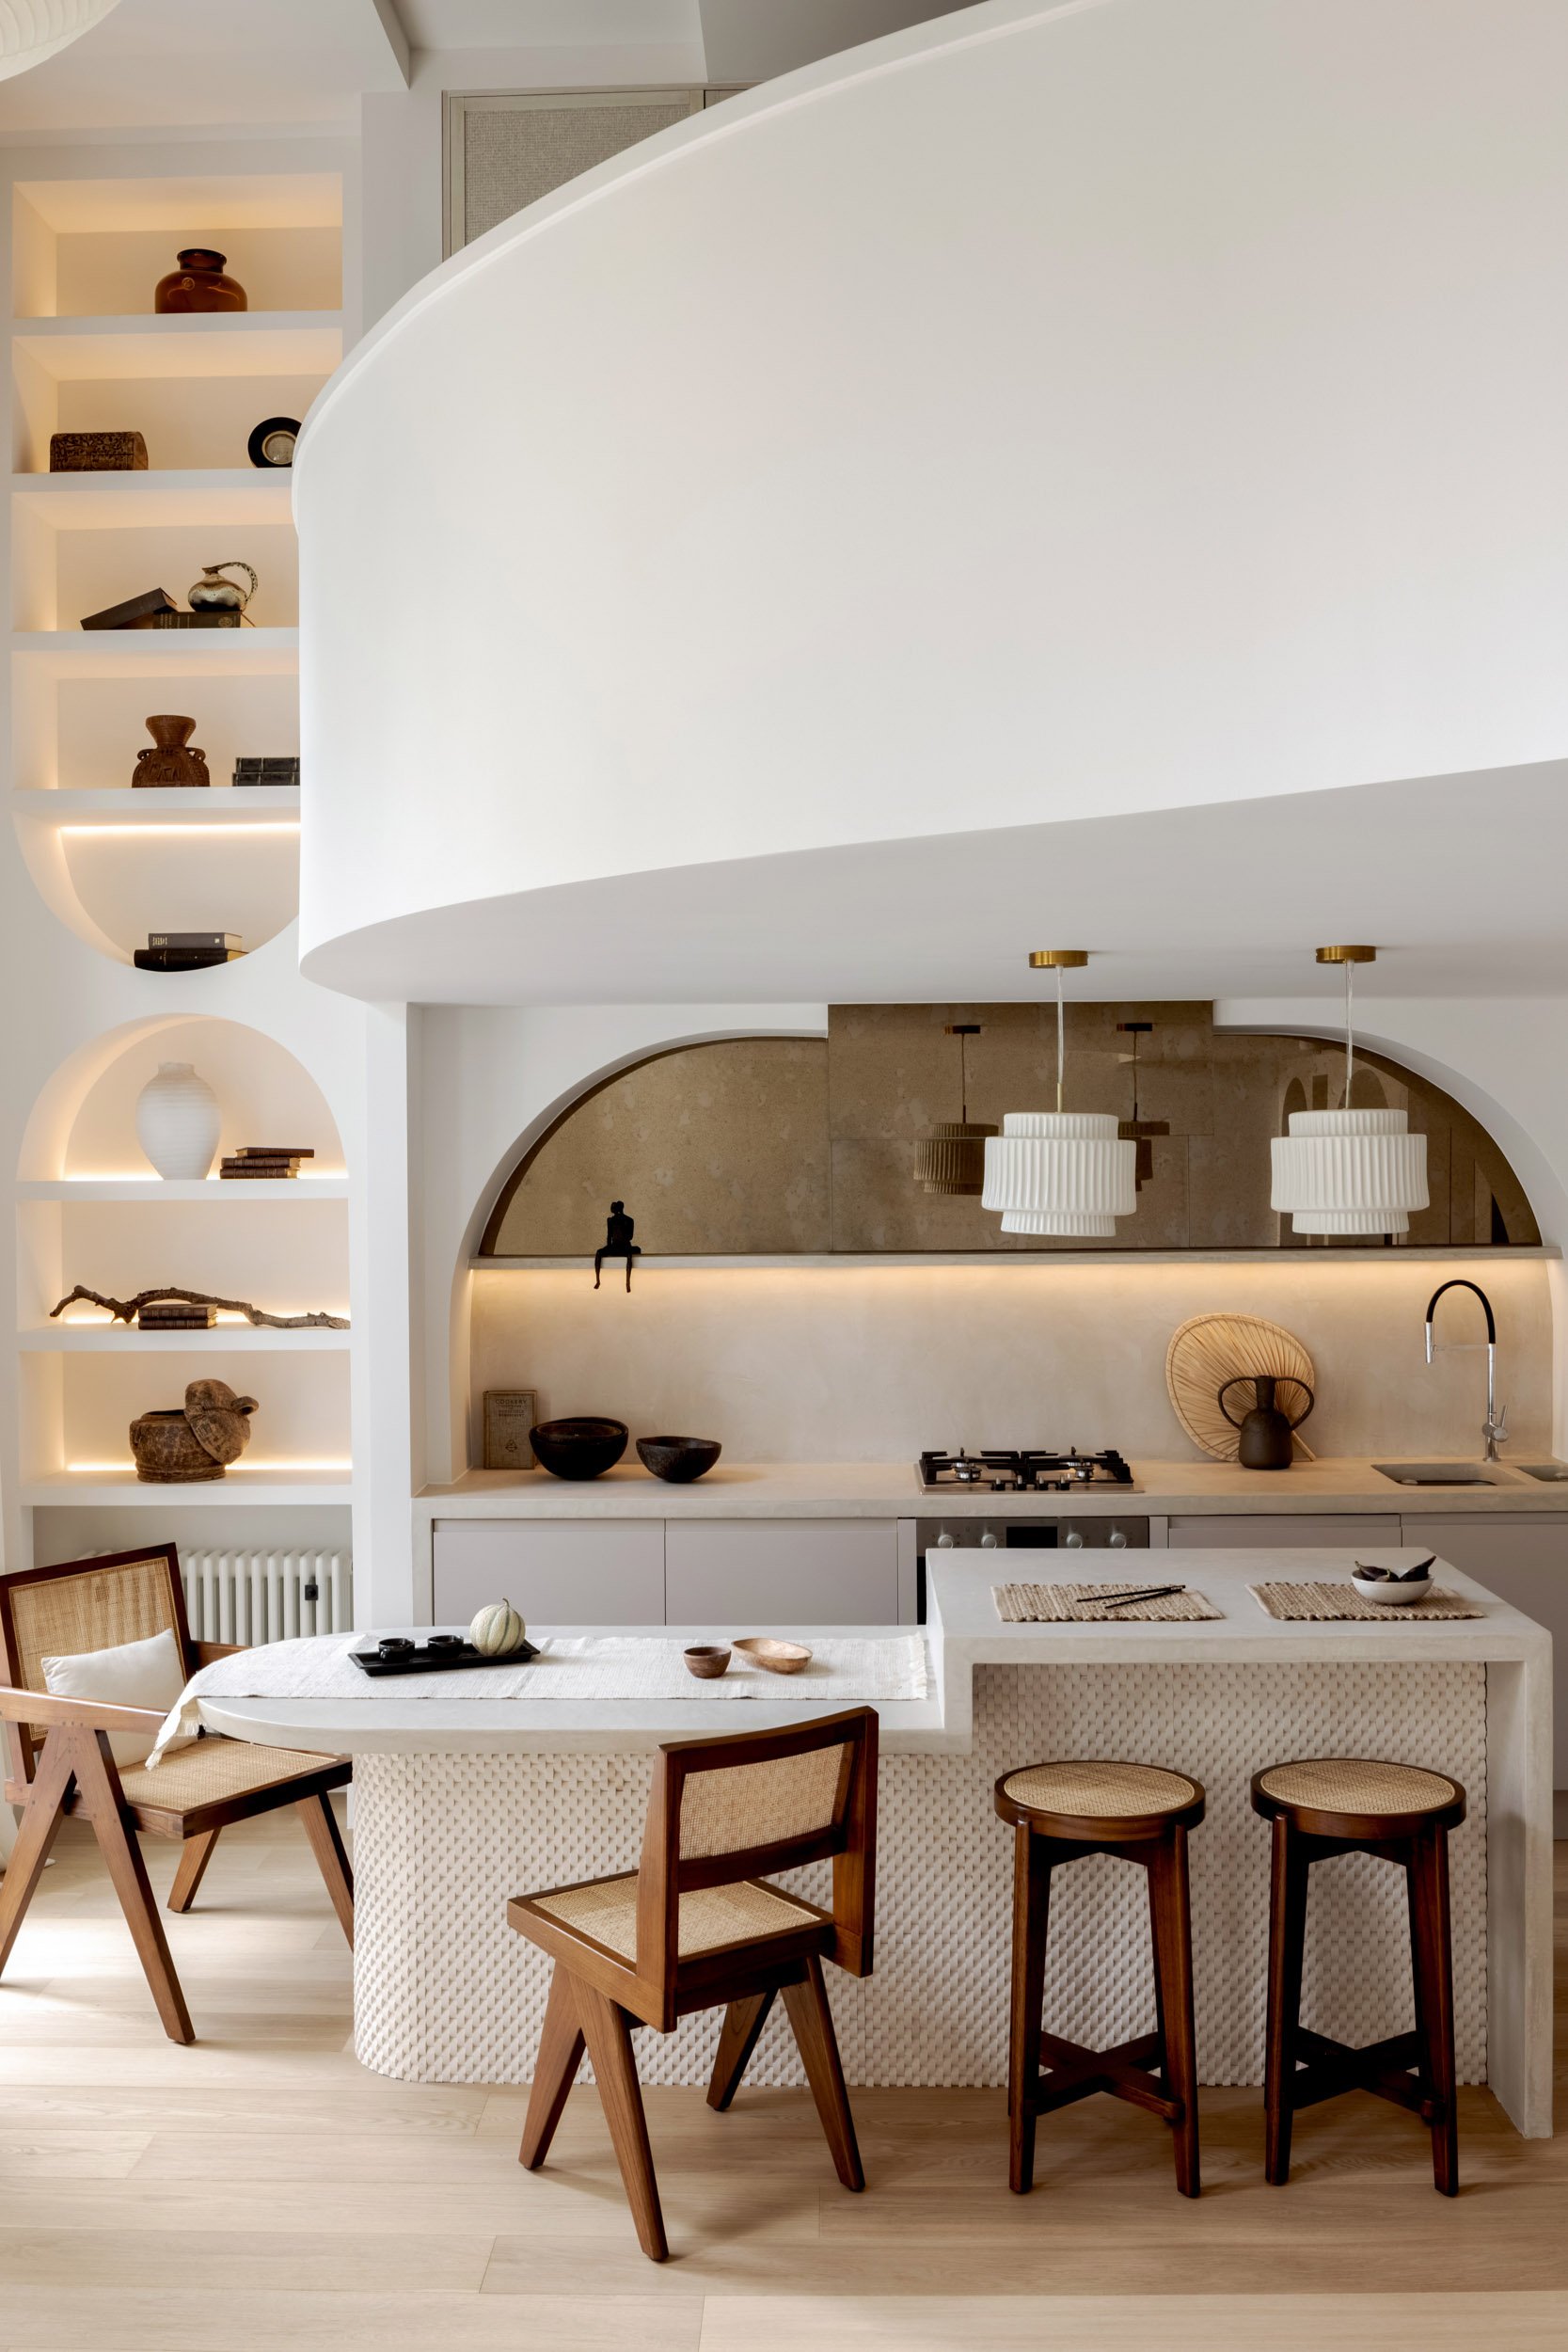 london-interior-design-kitchen-arches.jpg